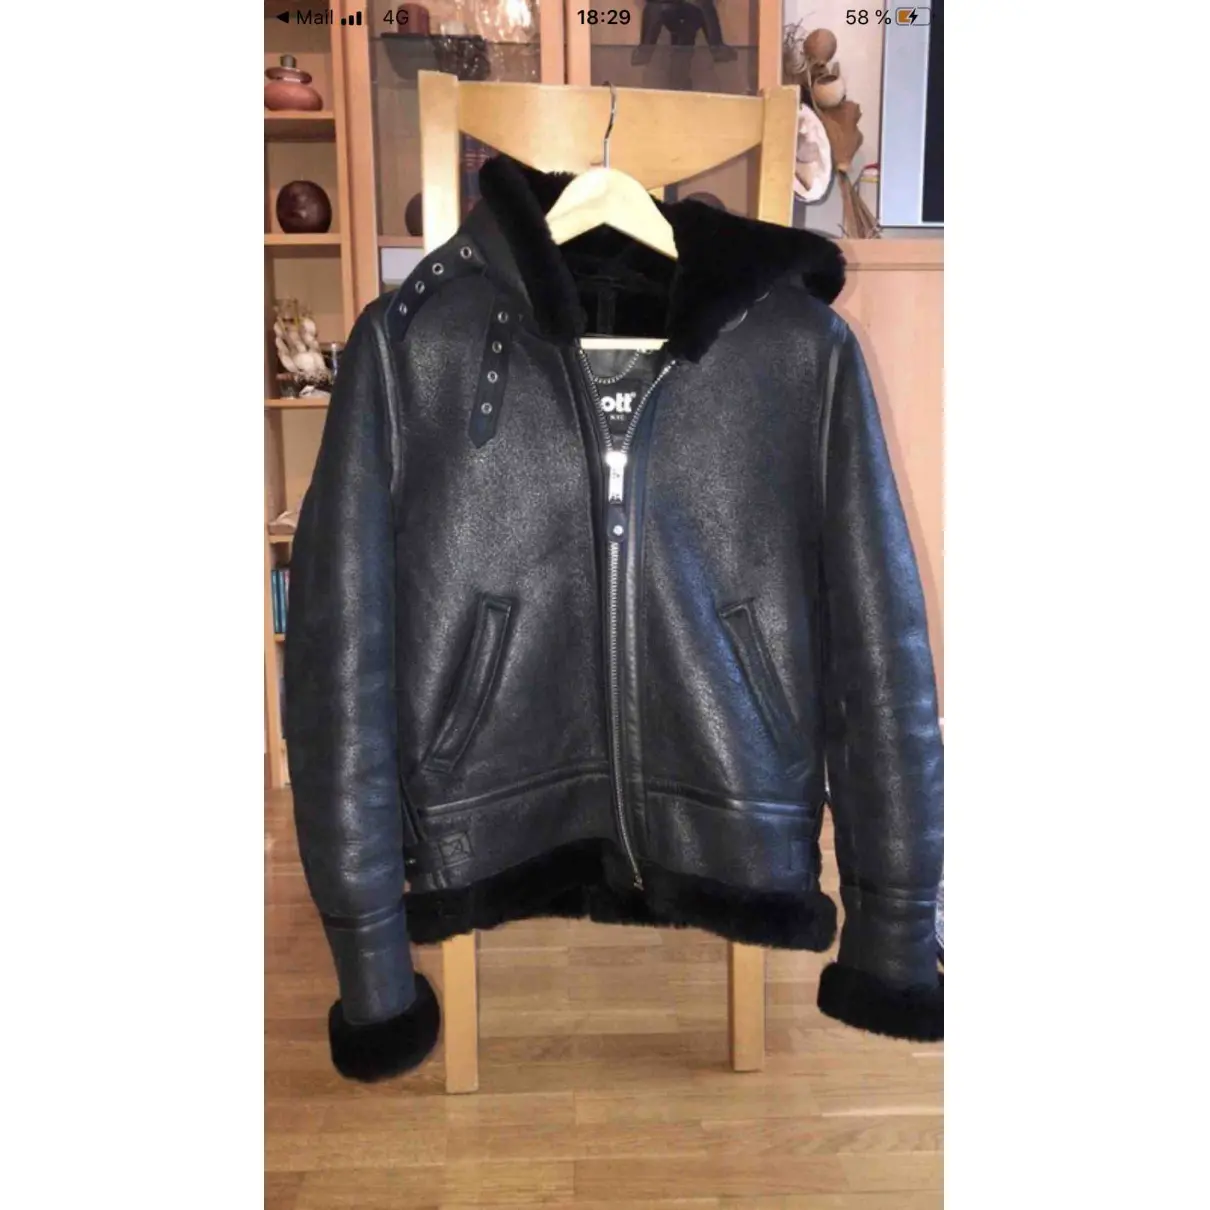 Buy Schott Leather biker jacket online